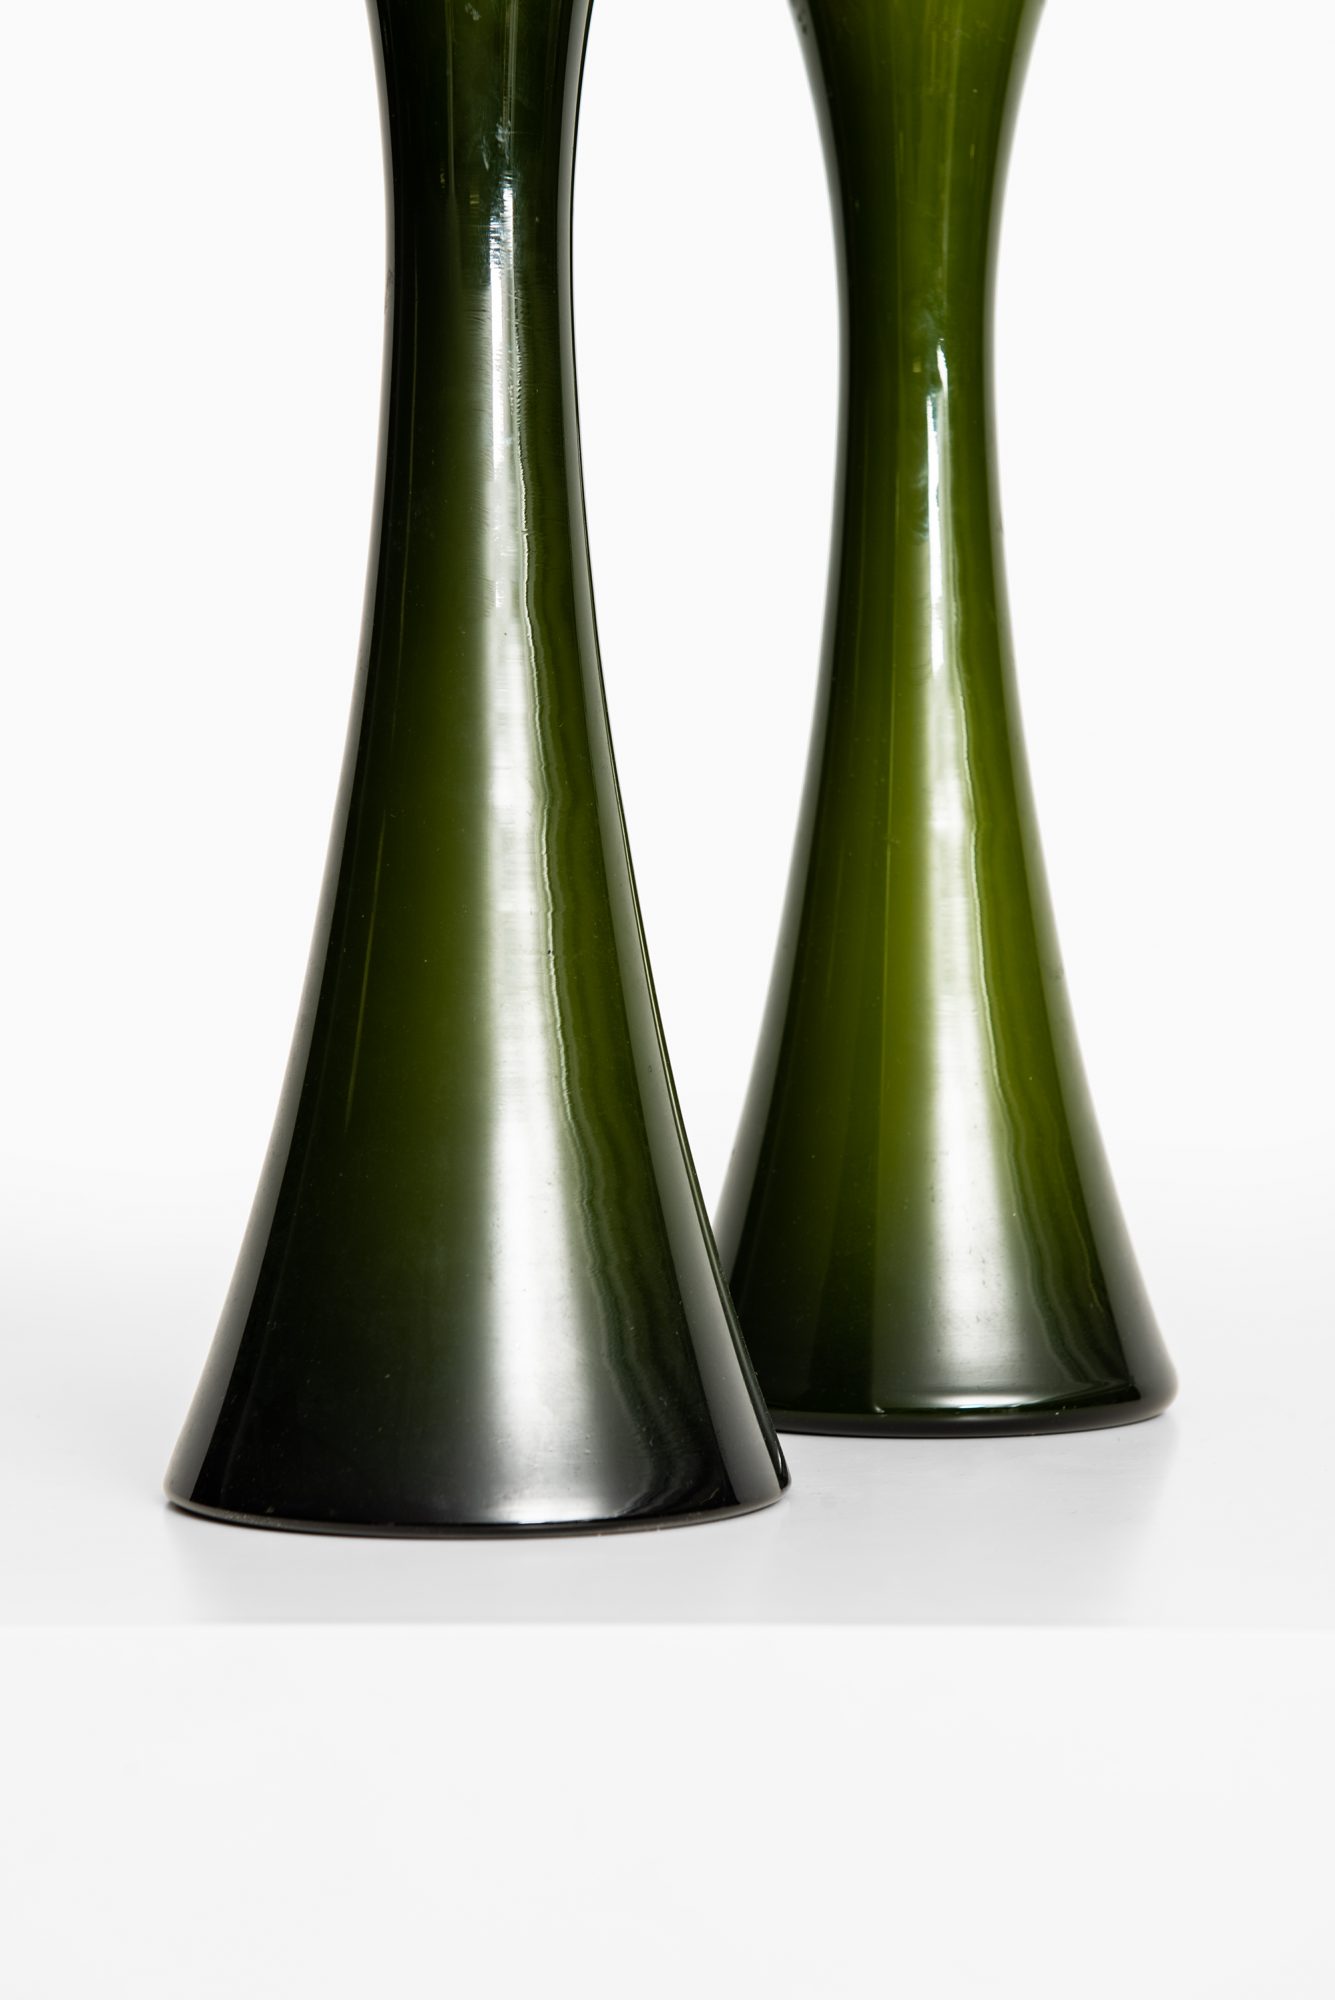 Berndt Nordstedt table lamps by Bergbom at Studio Schalling